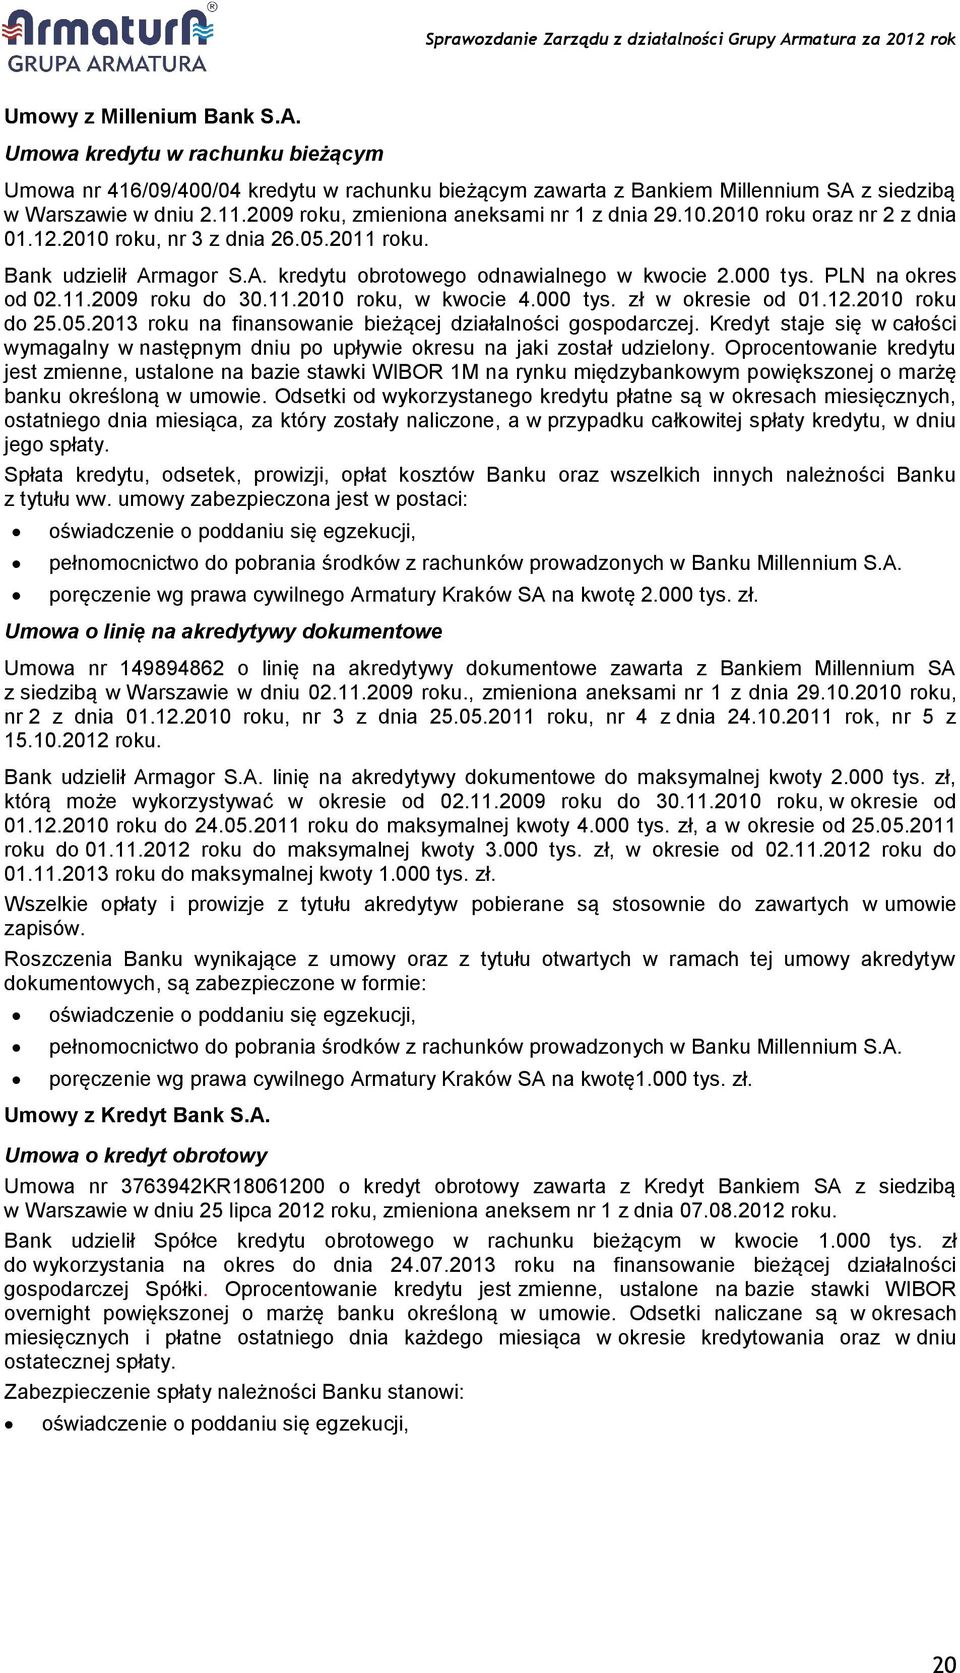 PLN na okres od 02.11.2009 roku do 30.11.2010 roku, w kwocie 4.000 tys. zł w okresie od 01.12.2010 roku do 25.05.2013 roku na finansowanie bieżącej działalności gospodarczej.